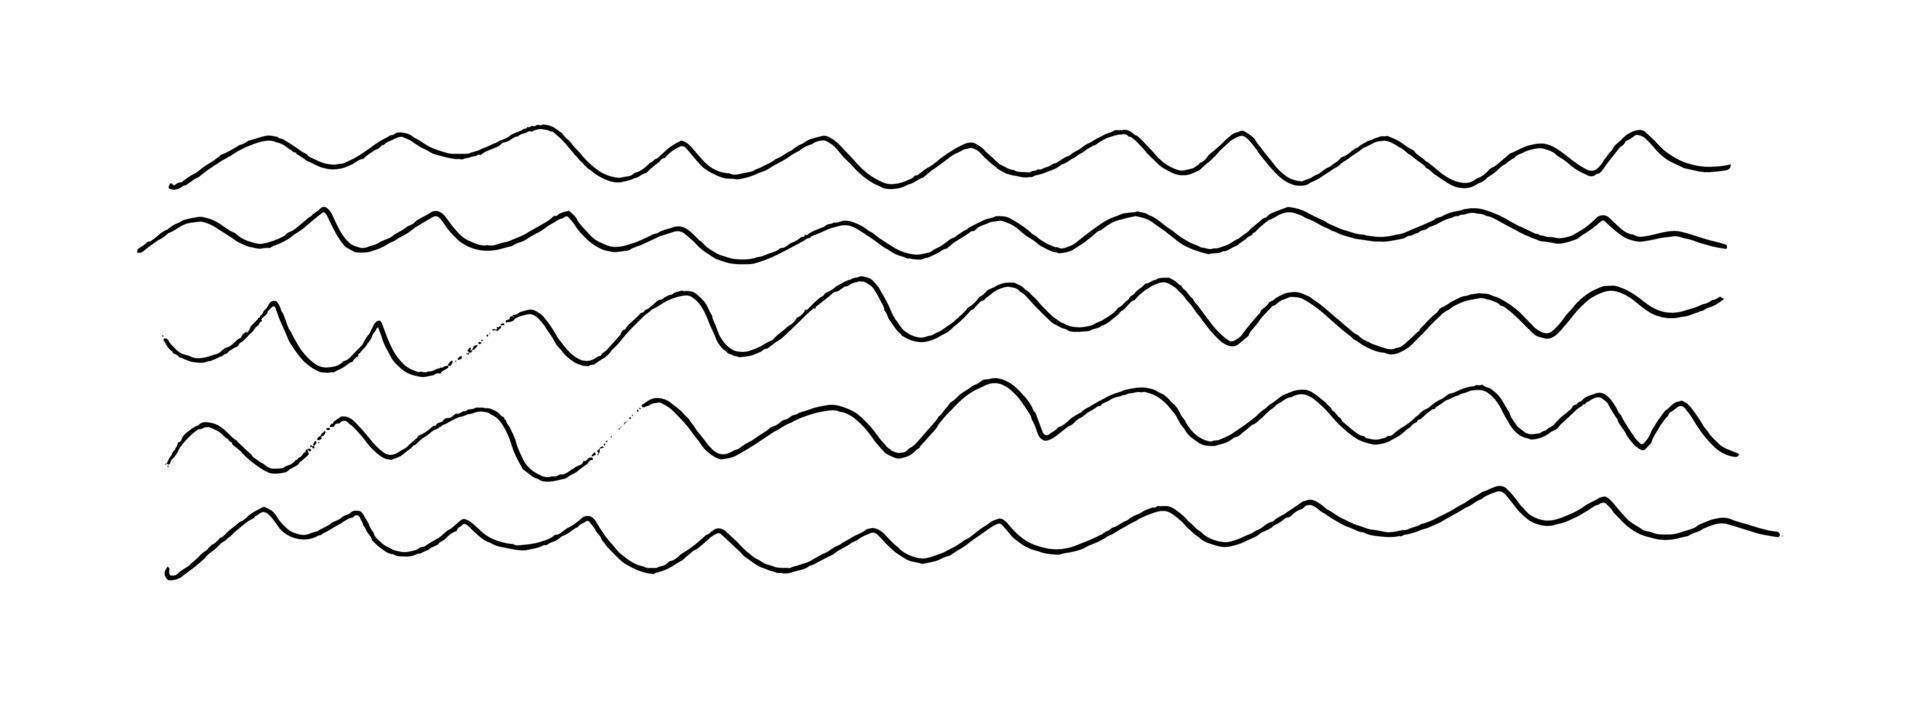 rader av klotter vågor. ritad för hand ojämn smal lång vågig former. horisontell bakgrund textur isolerat på vit. vektor